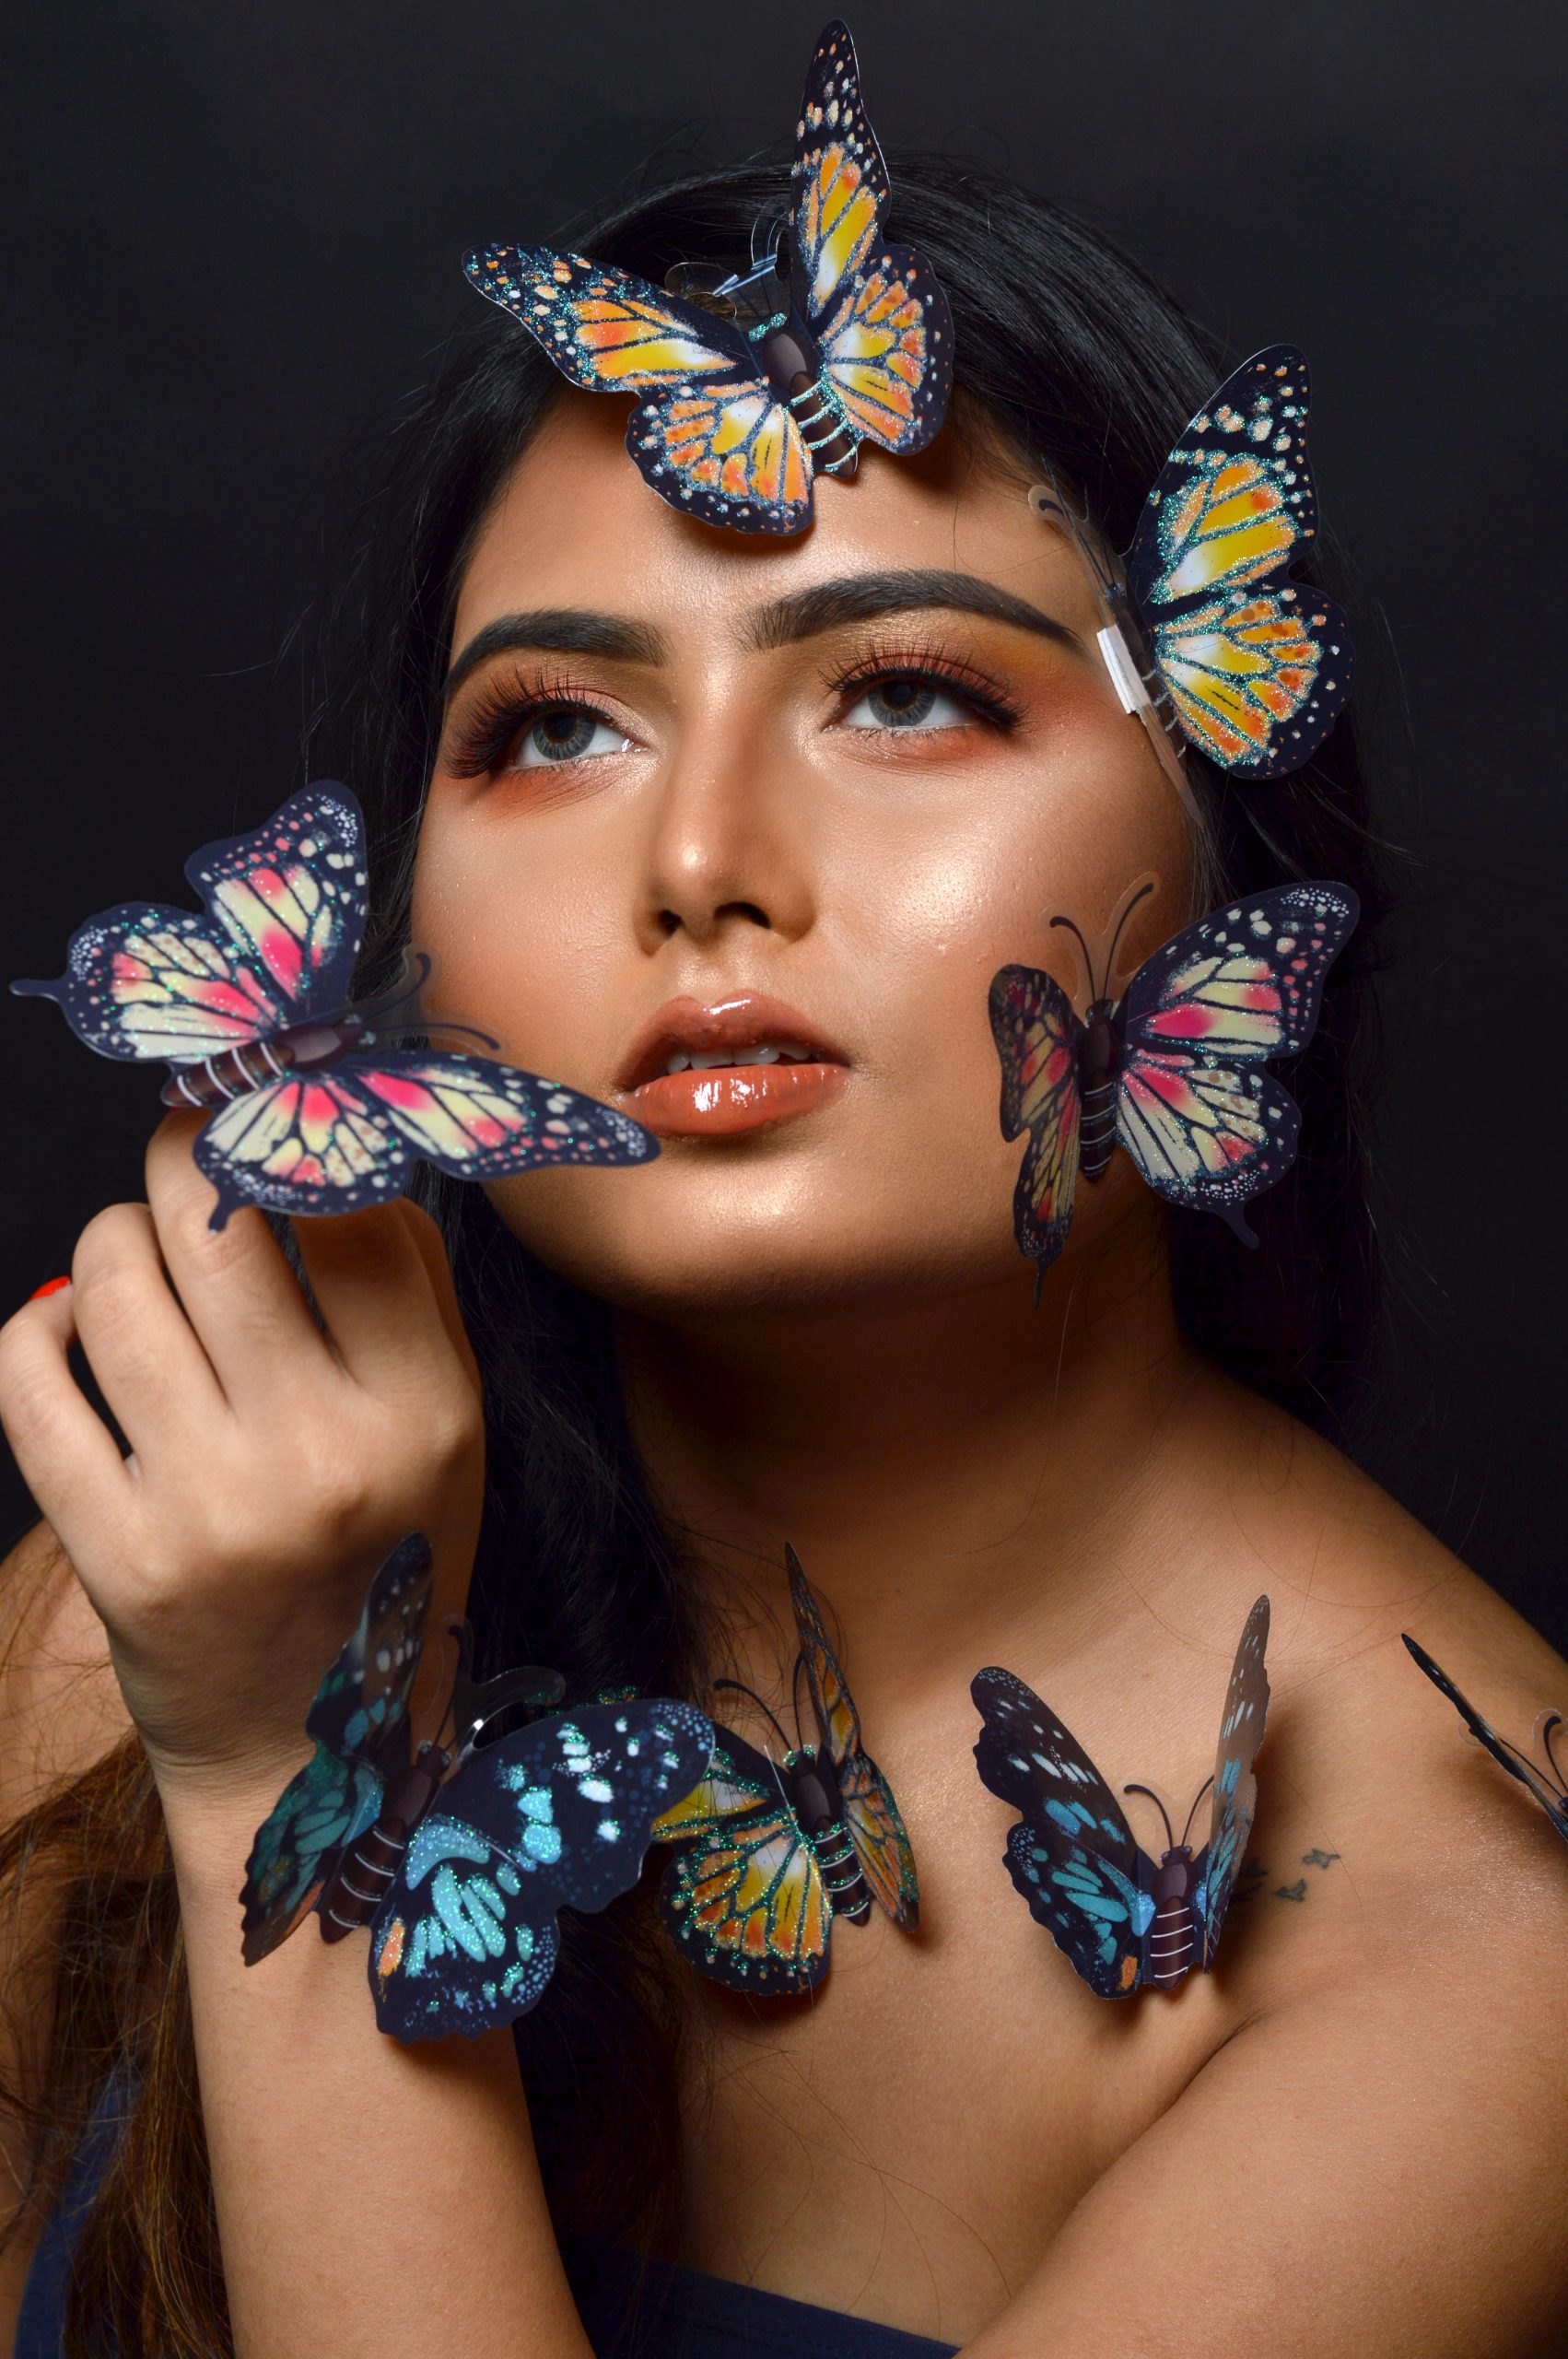 Butterflies and a girl